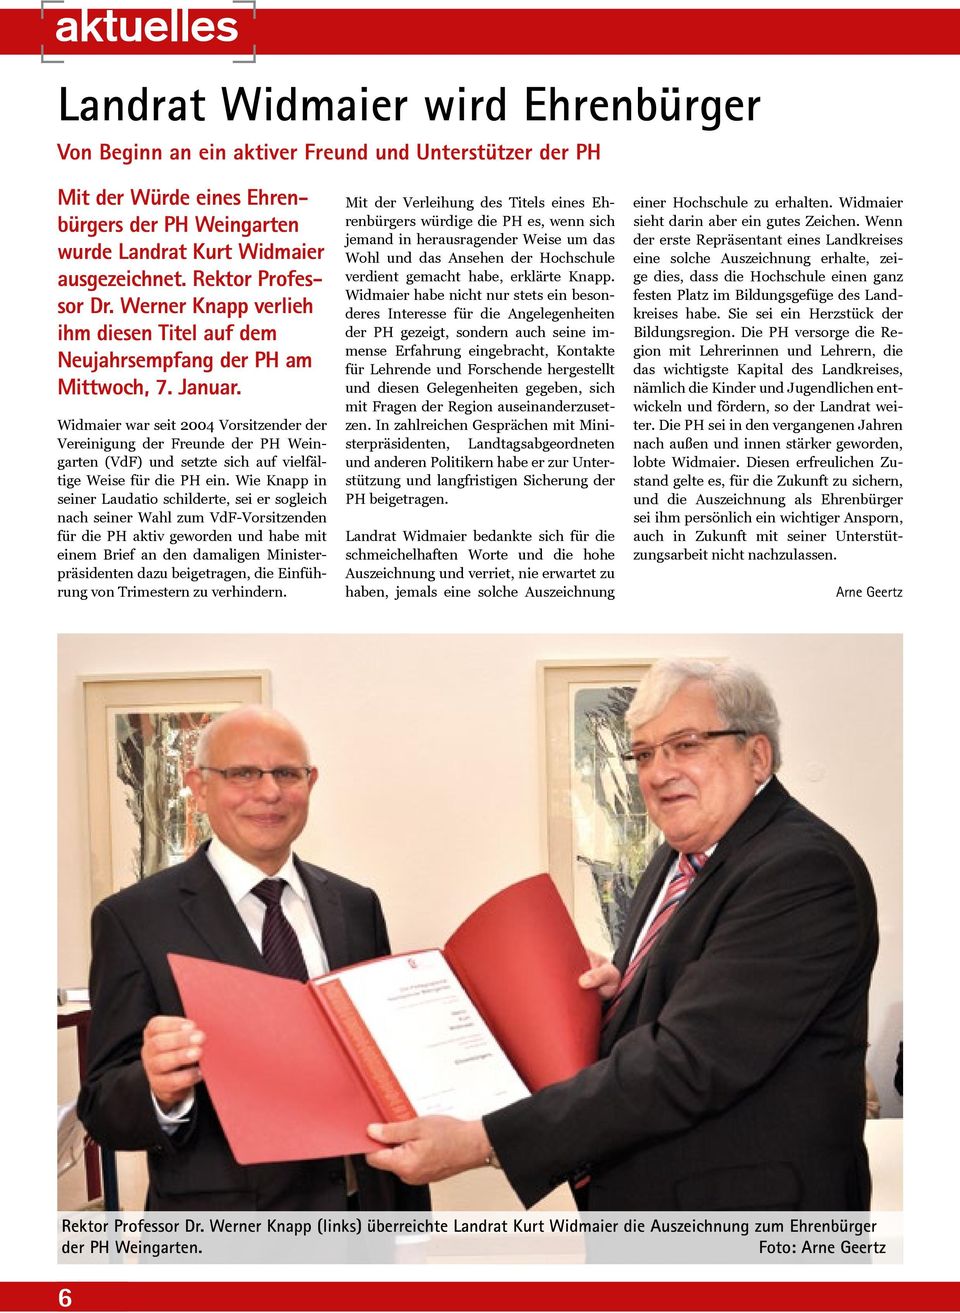 Widmaier war seit 2004 Vorsitzender der Vereinigung der Freunde der PH Weingarten (VdF) und setzte sich auf vielfältige Weise für die PH ein.